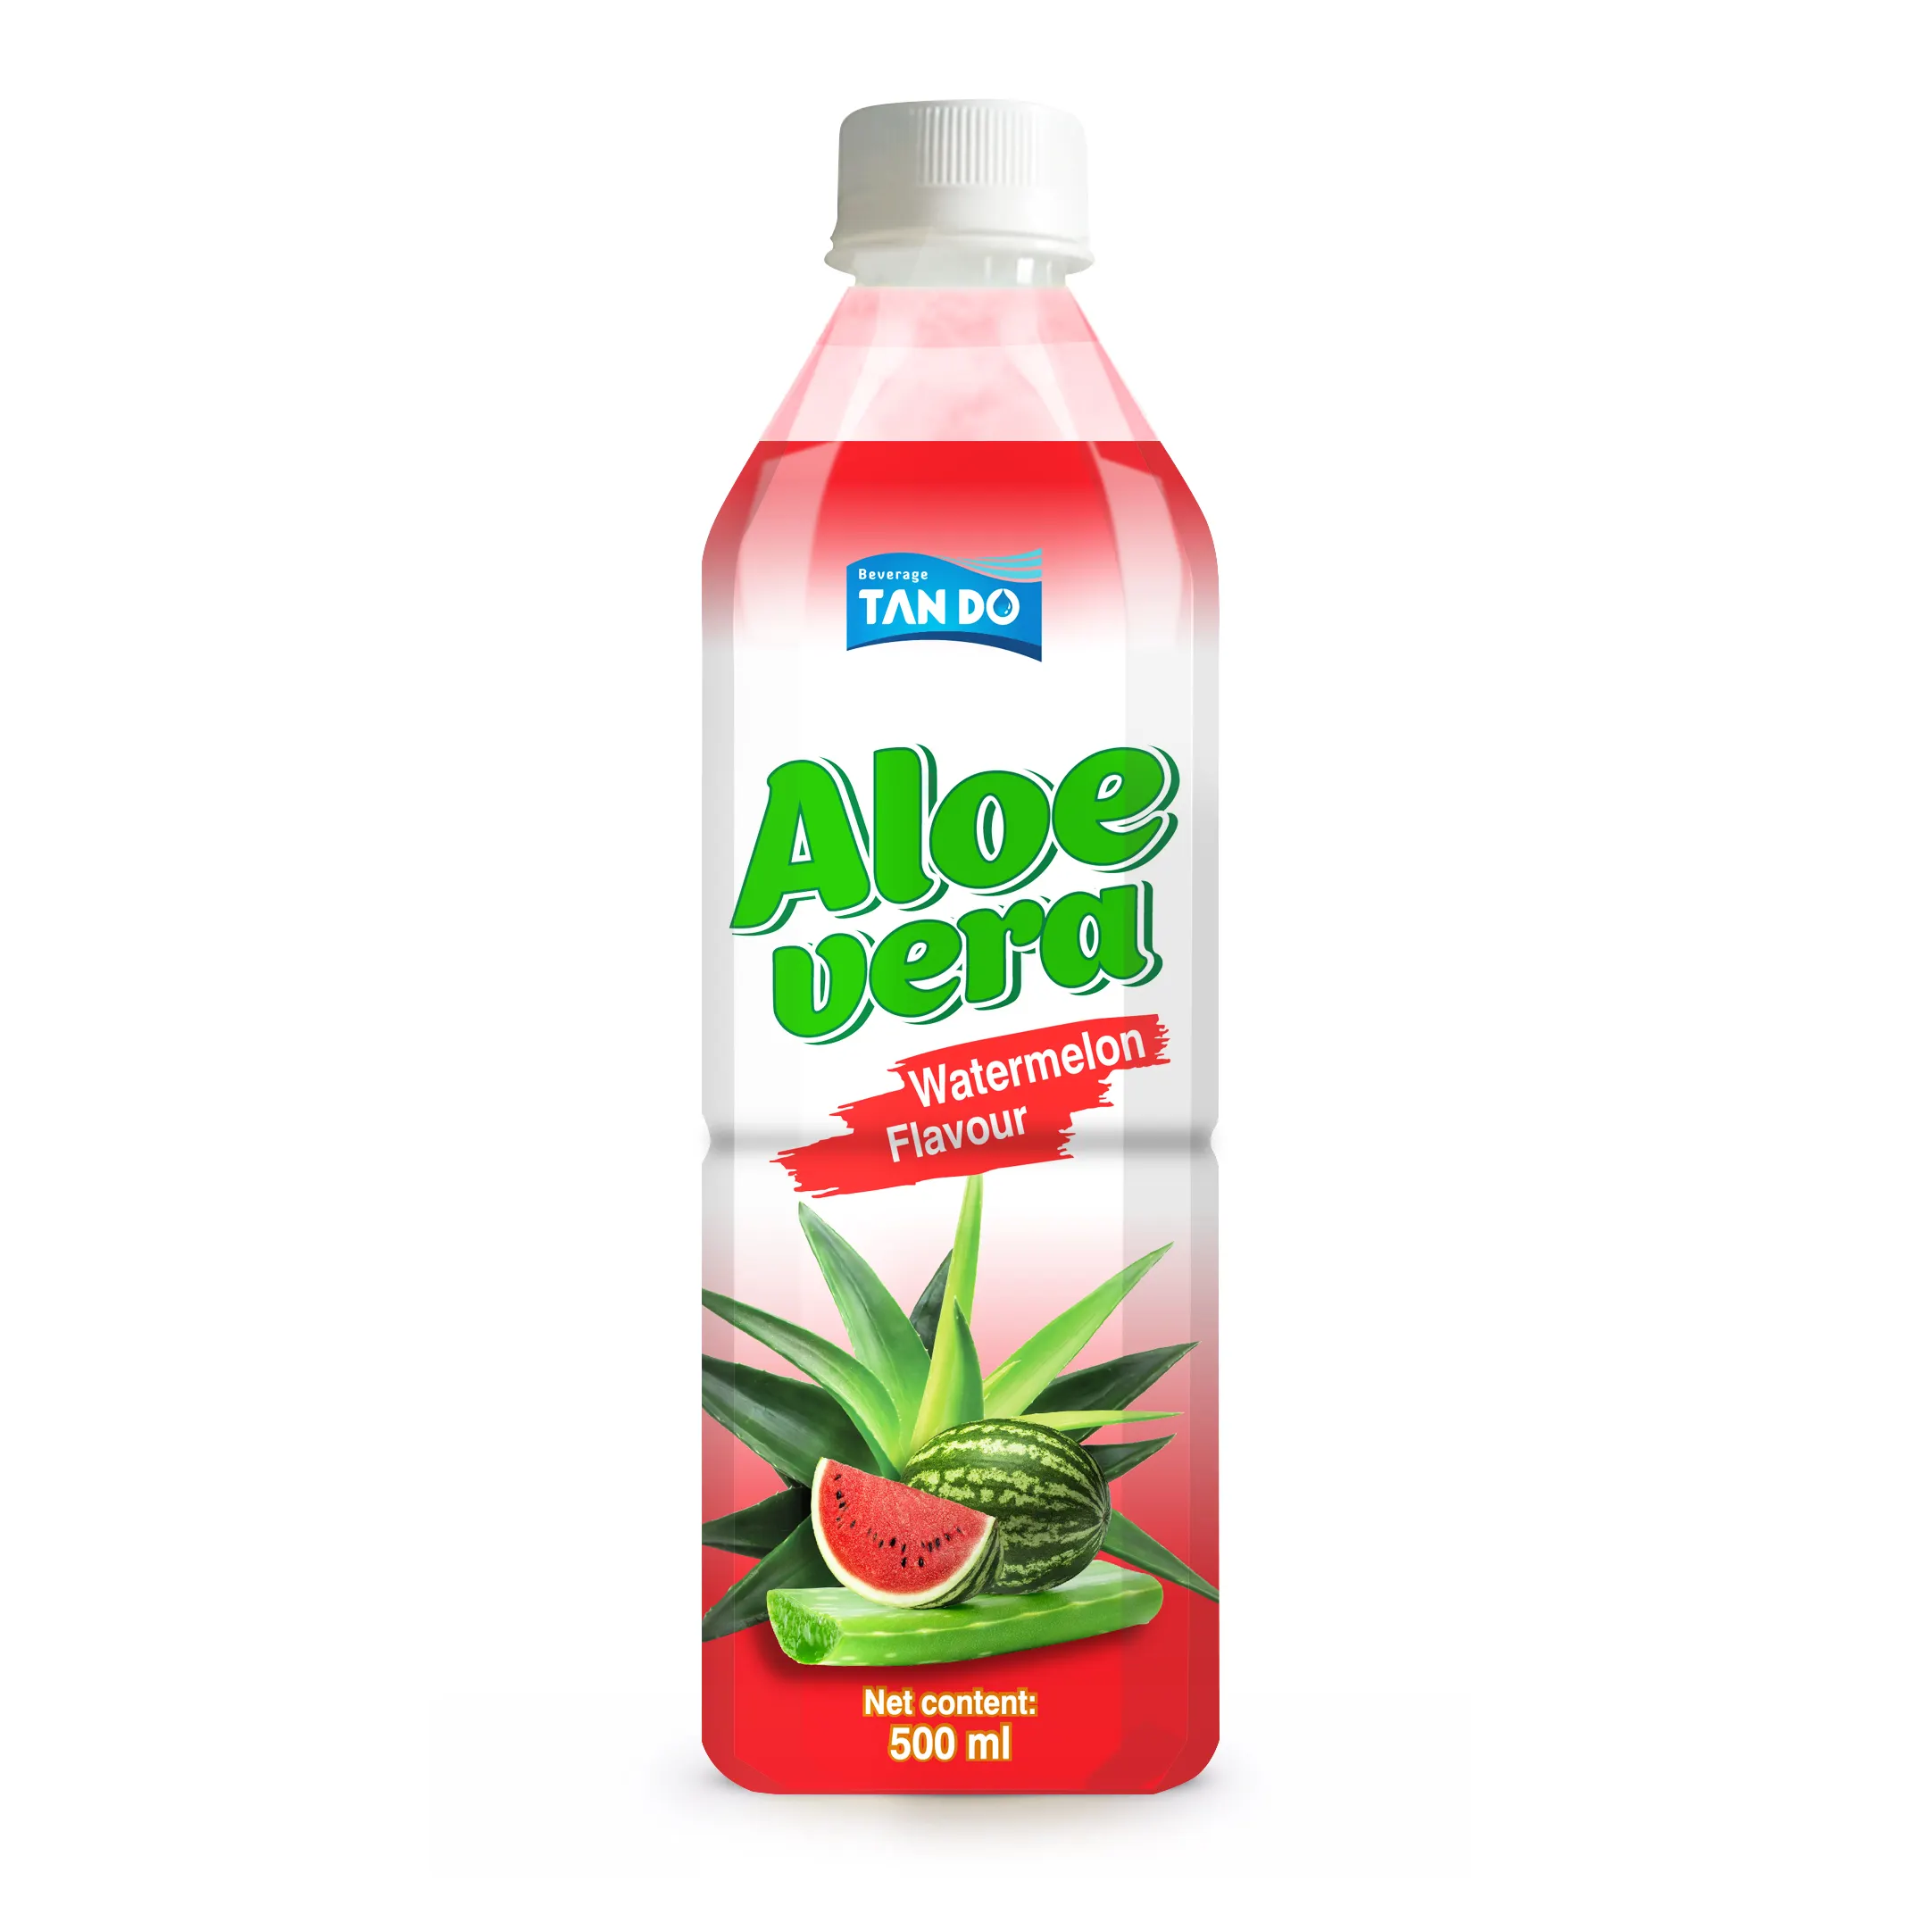 Aloe Vera hamuru ile içecek karpuz lezzet by Tan Do içecek paketi, PET şişe 500ml